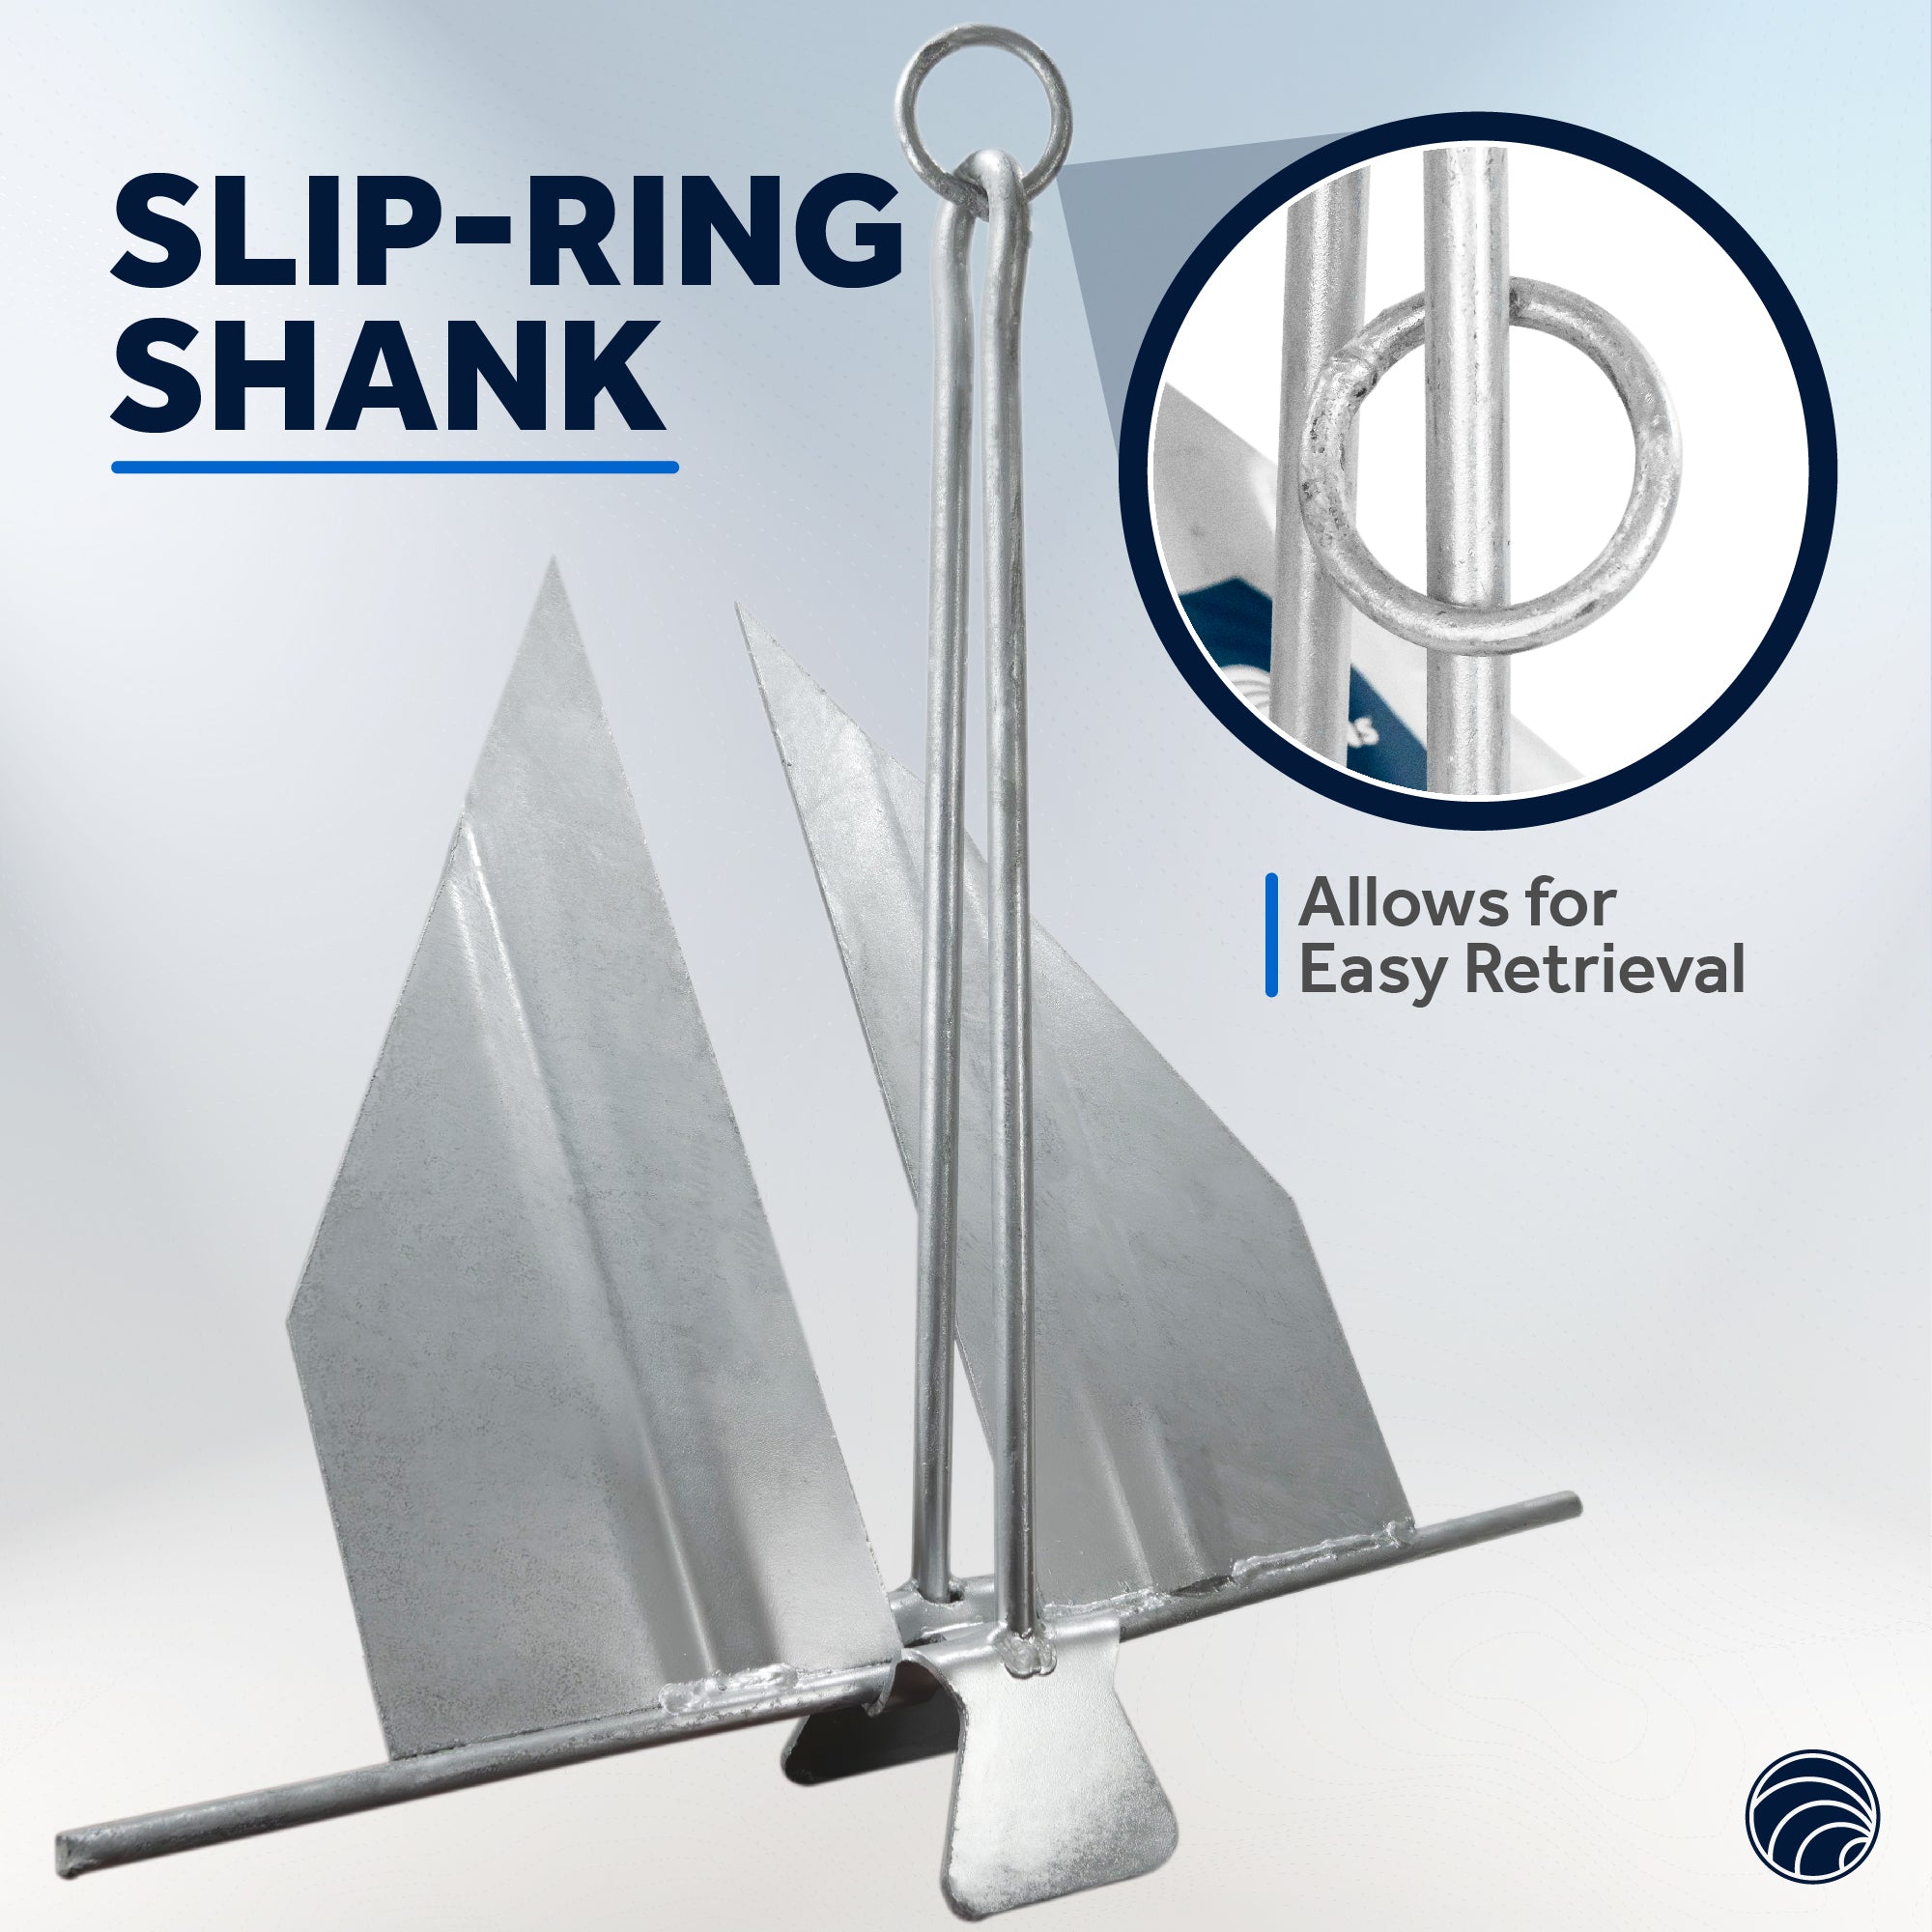 Boat Fluke Anchor, 6 Lb Easy-Release Galvanized Steel, Slip Ring Shank - FO4623